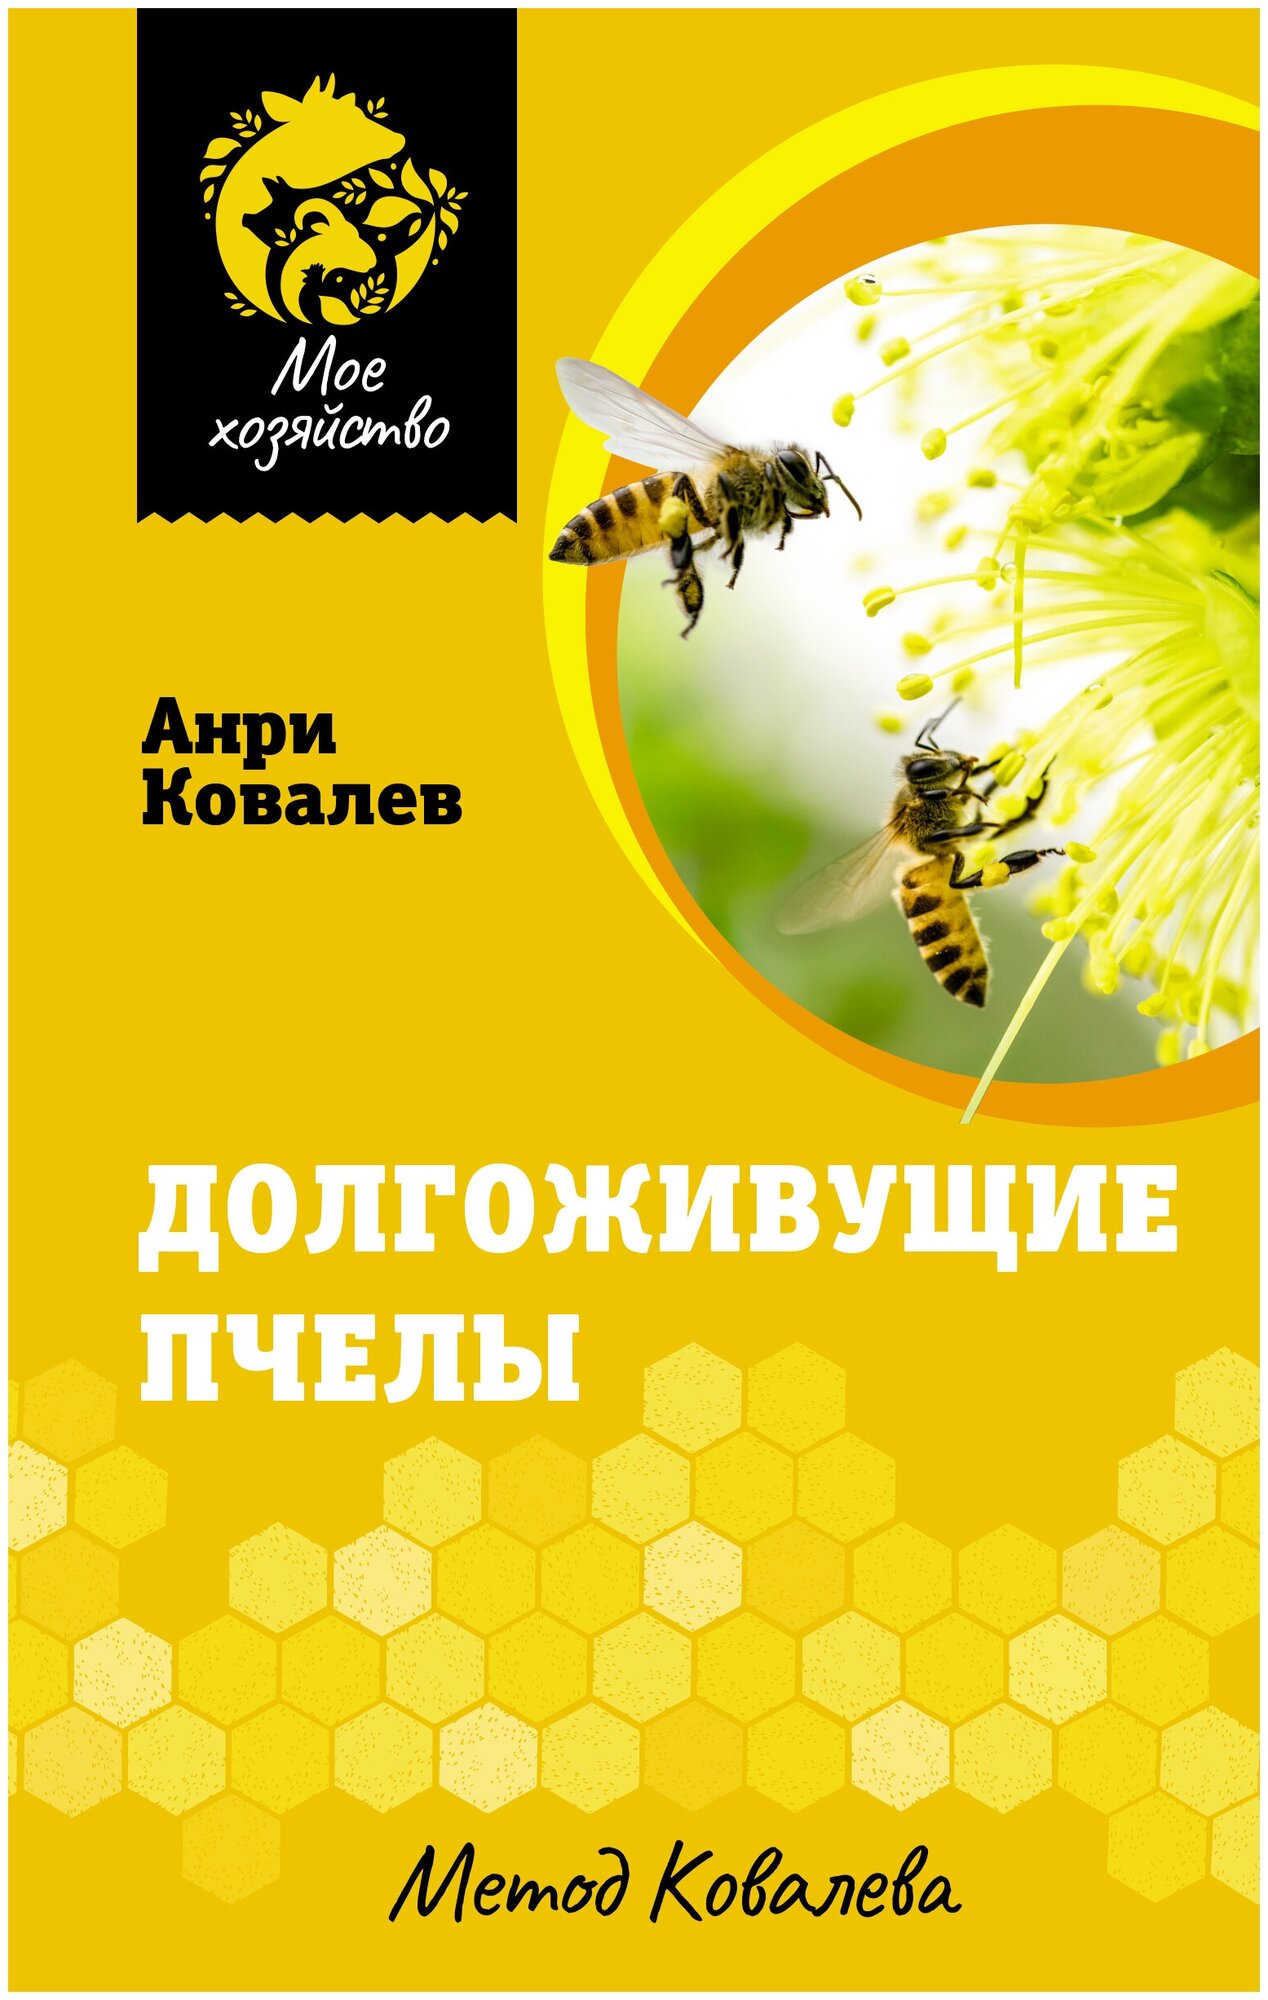 Долгоживущие пчелы Метод Ковалева